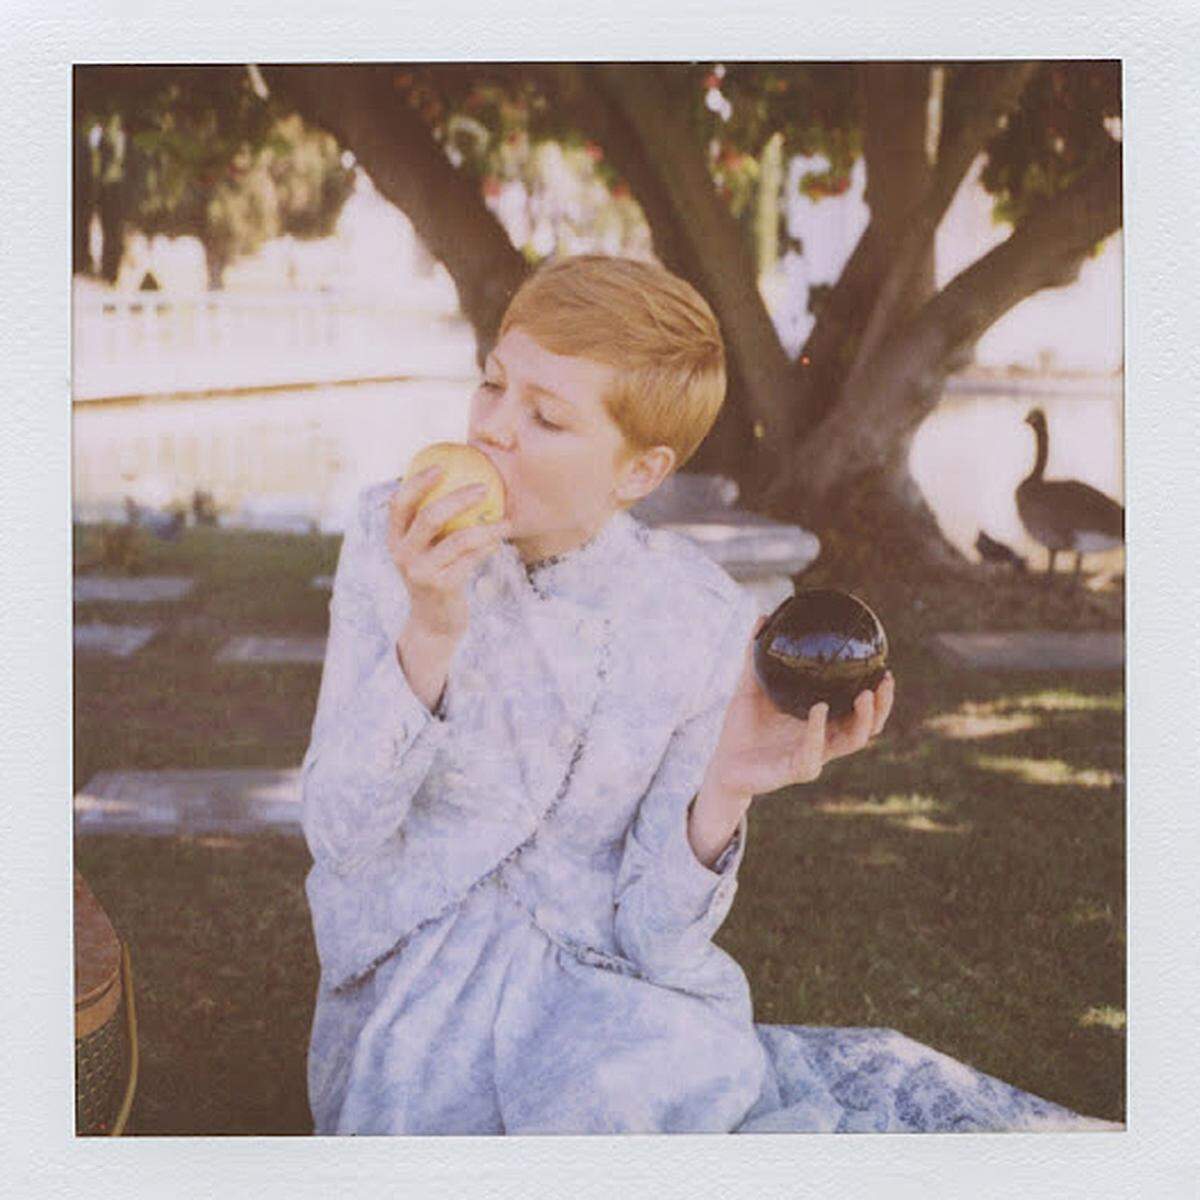 ... die US-Schauspielerin Michelle Williams auf Polaroid festgehalten.